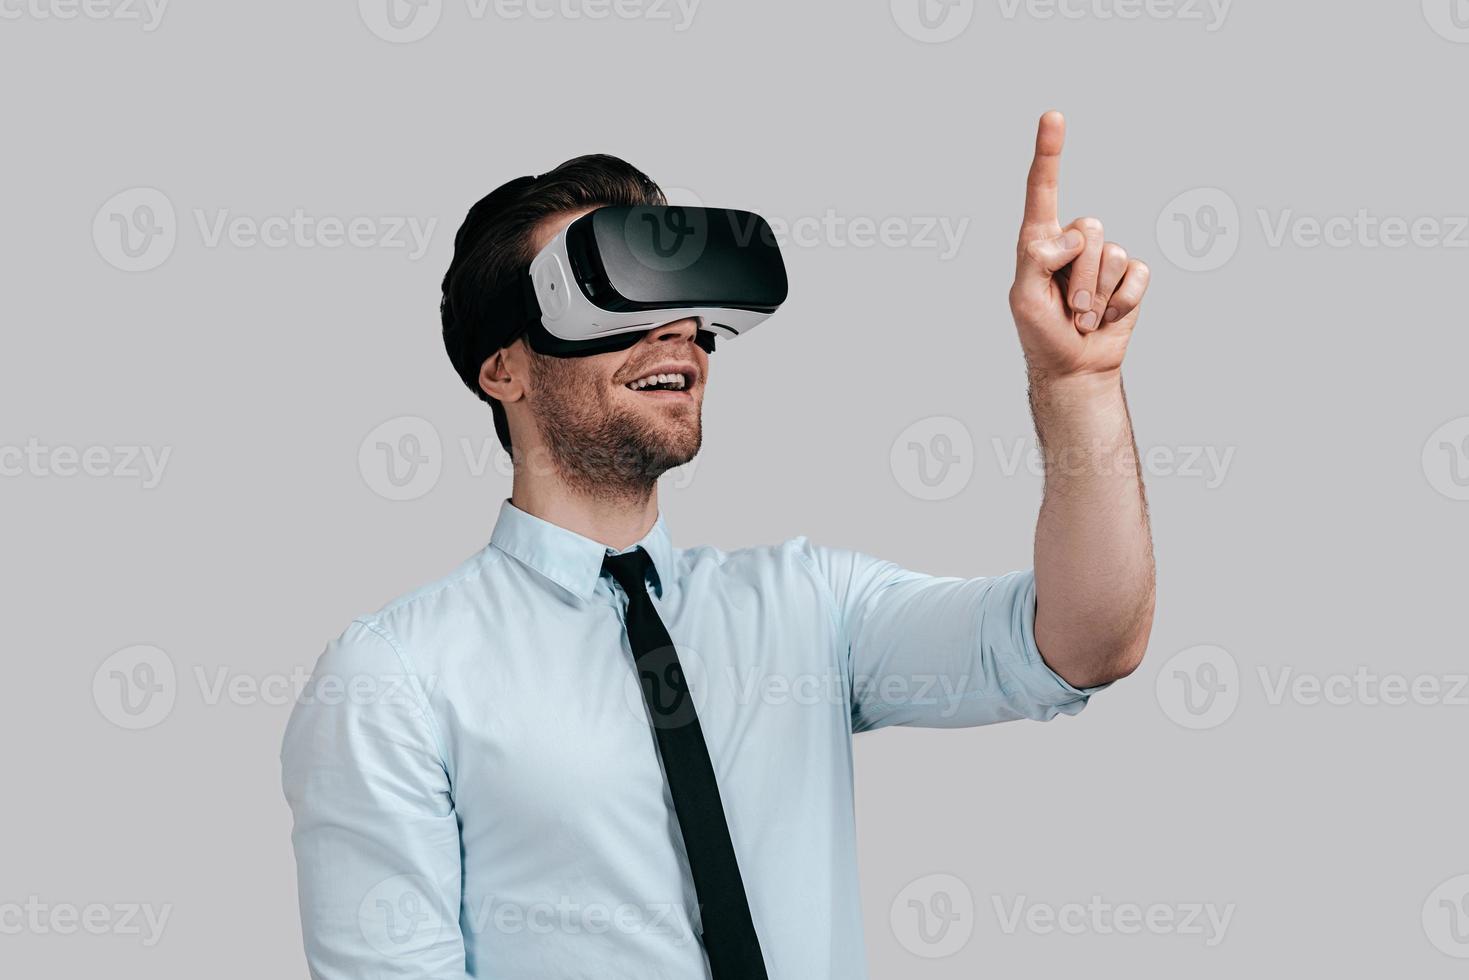 usufruindo de tecnologias inovadoras. jovem bonito no fone de ouvido de realidade virtual apontando para o ar em pé contra um fundo cinza foto